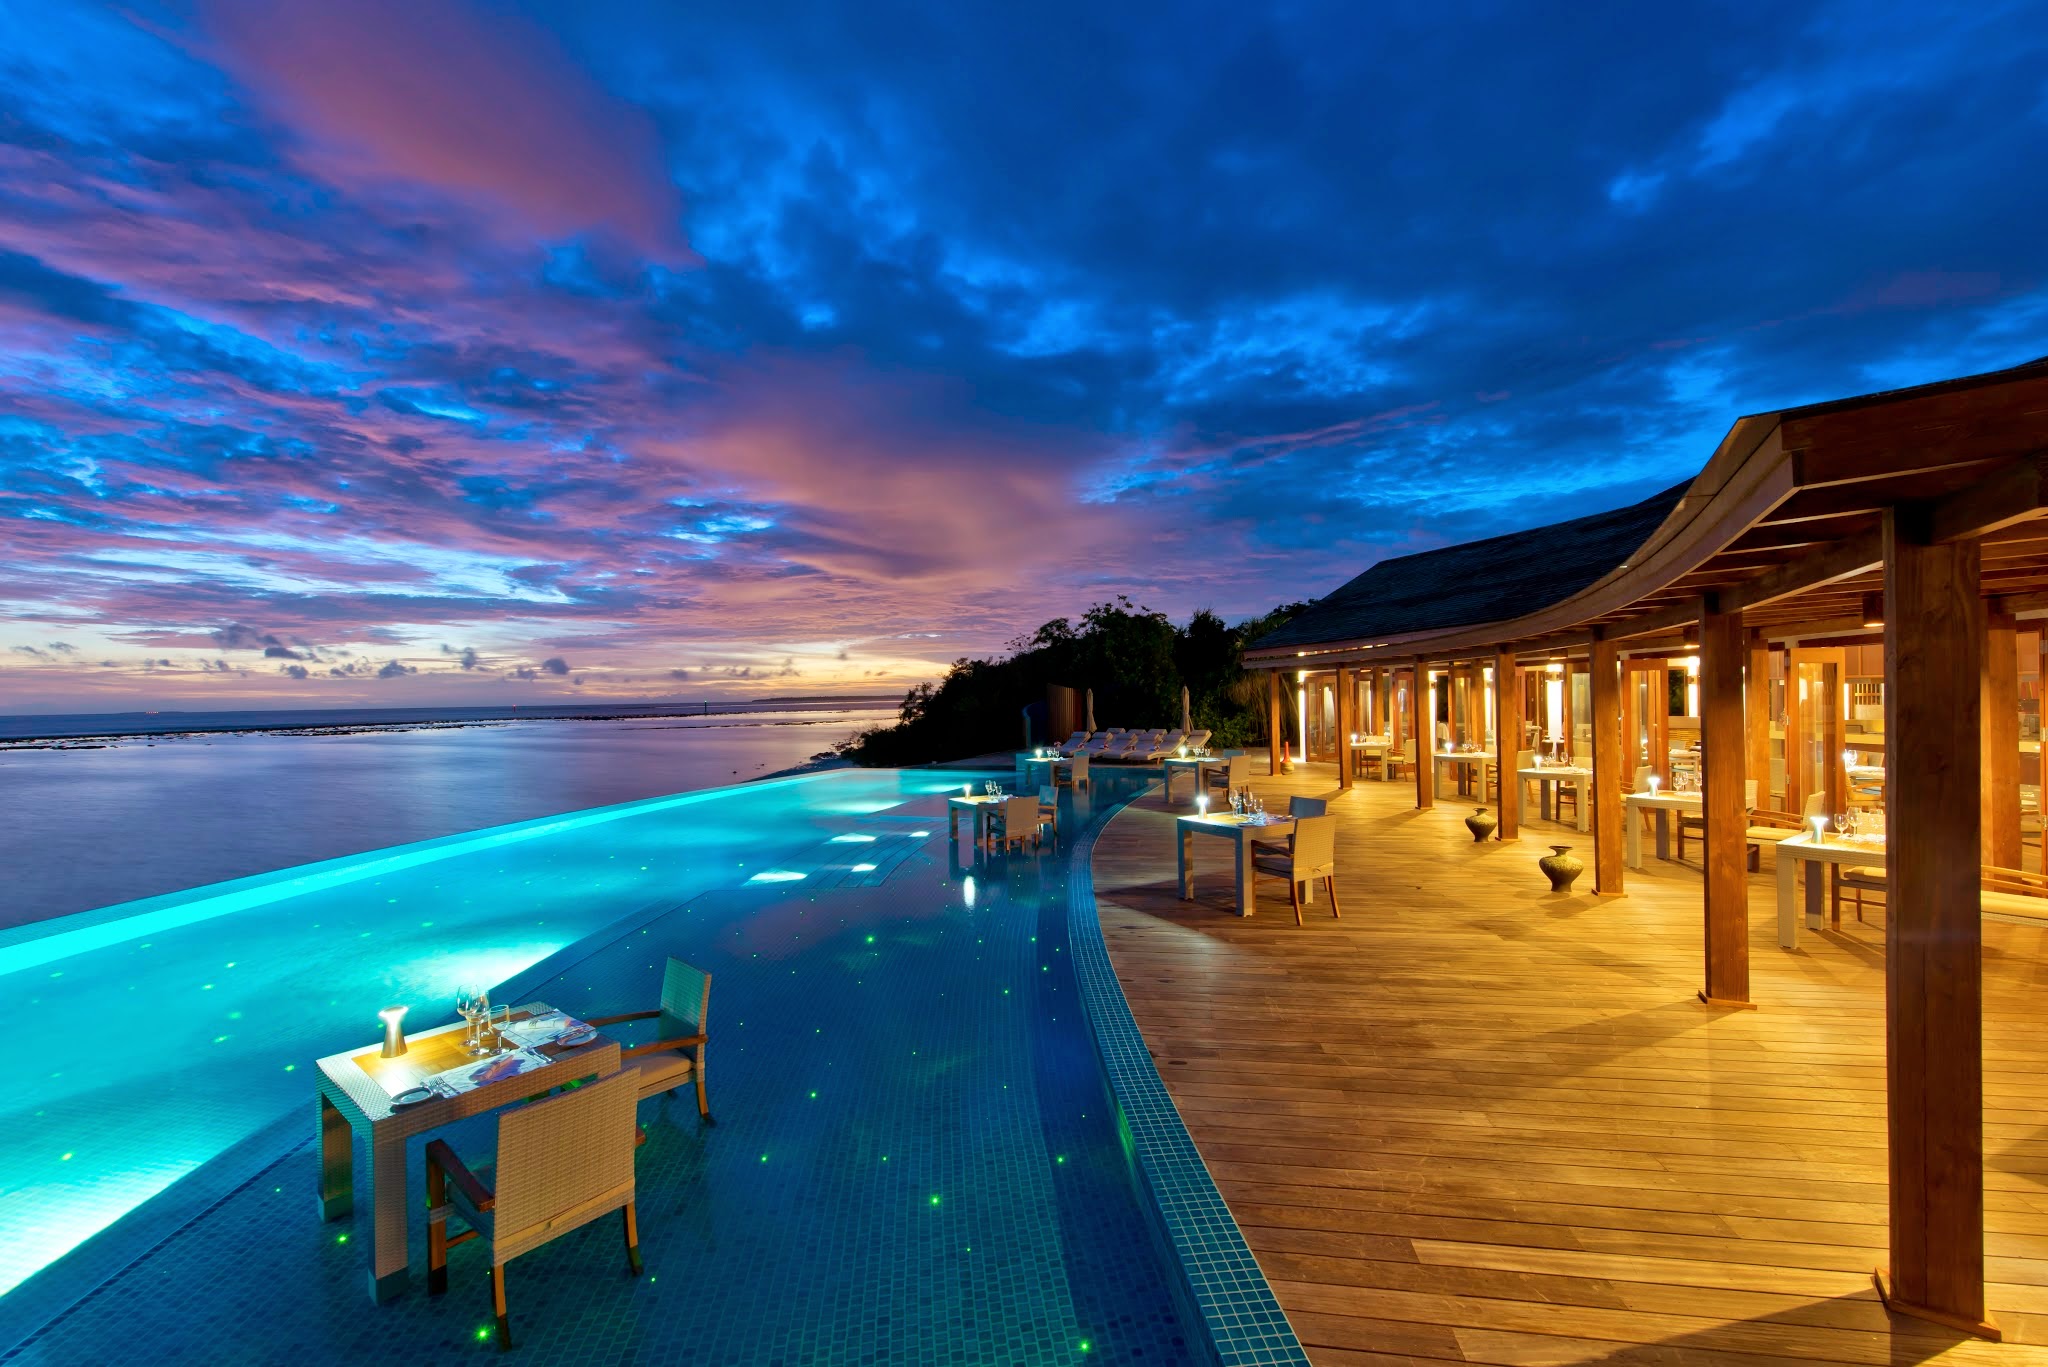 افضل الفنادق المتميزه في السعر في المالديف (5)